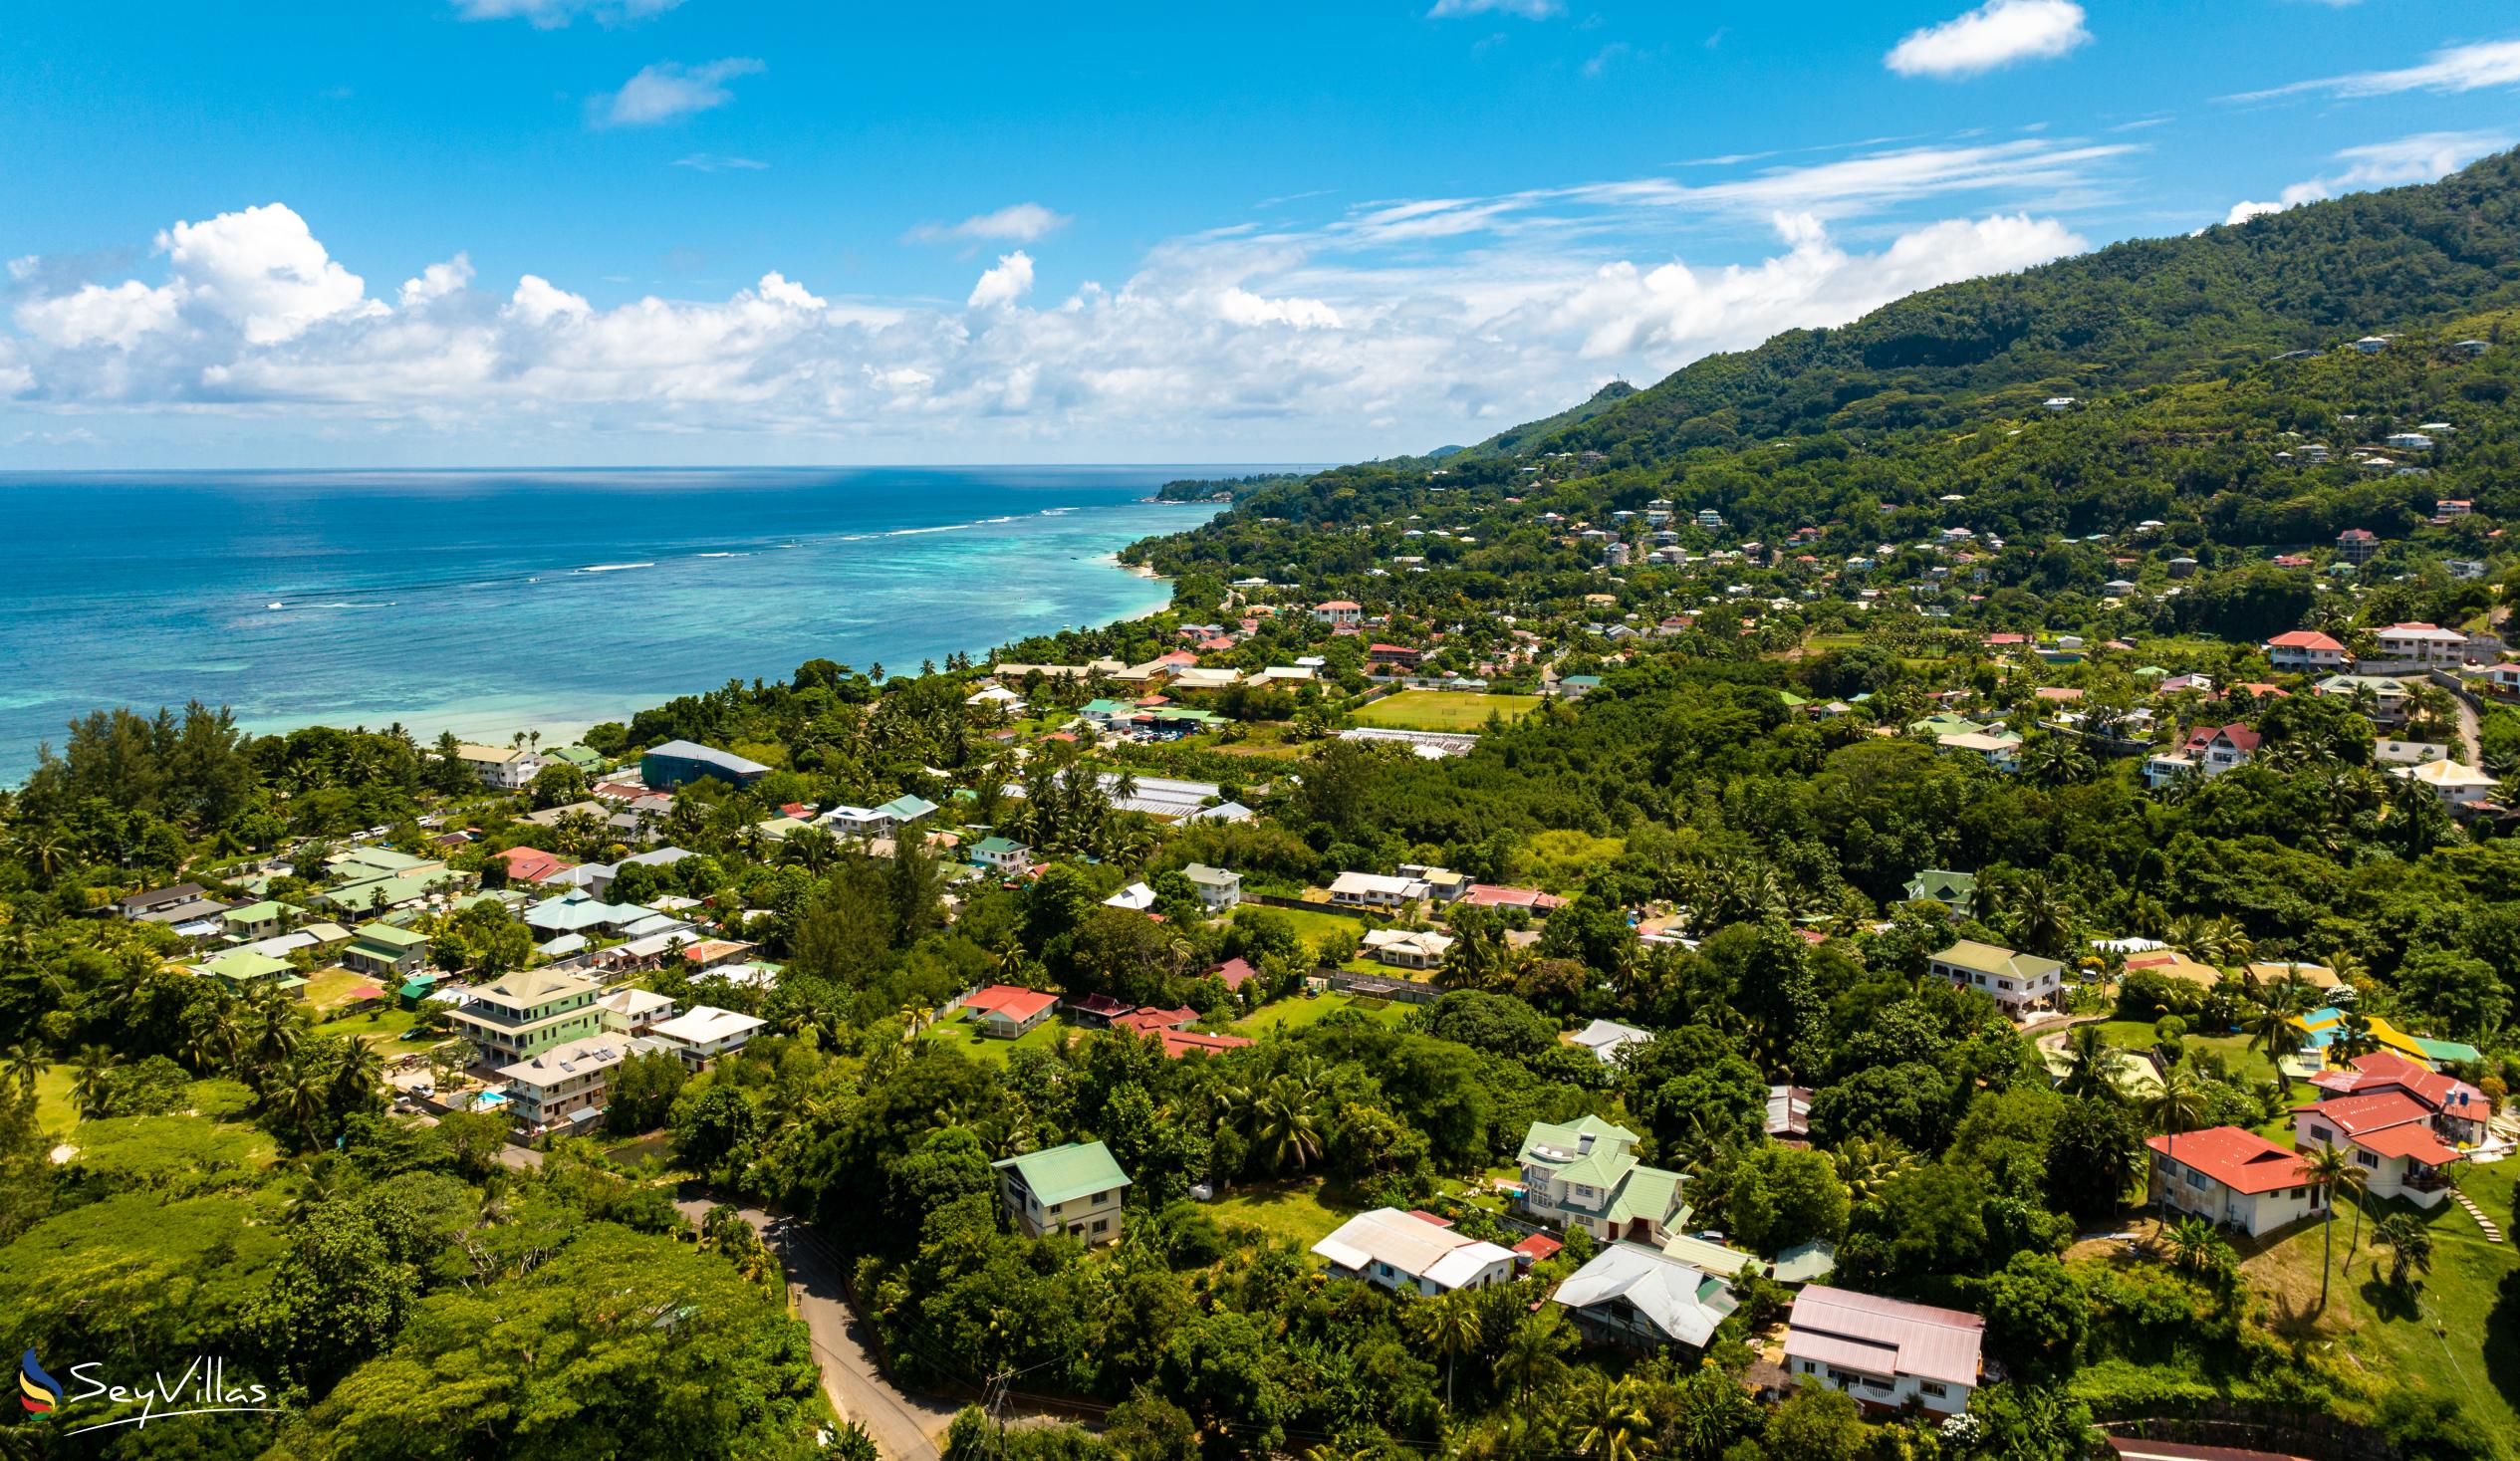 Photo 22: JAIDSS Holiday Apartments - Location - Mahé (Seychelles)